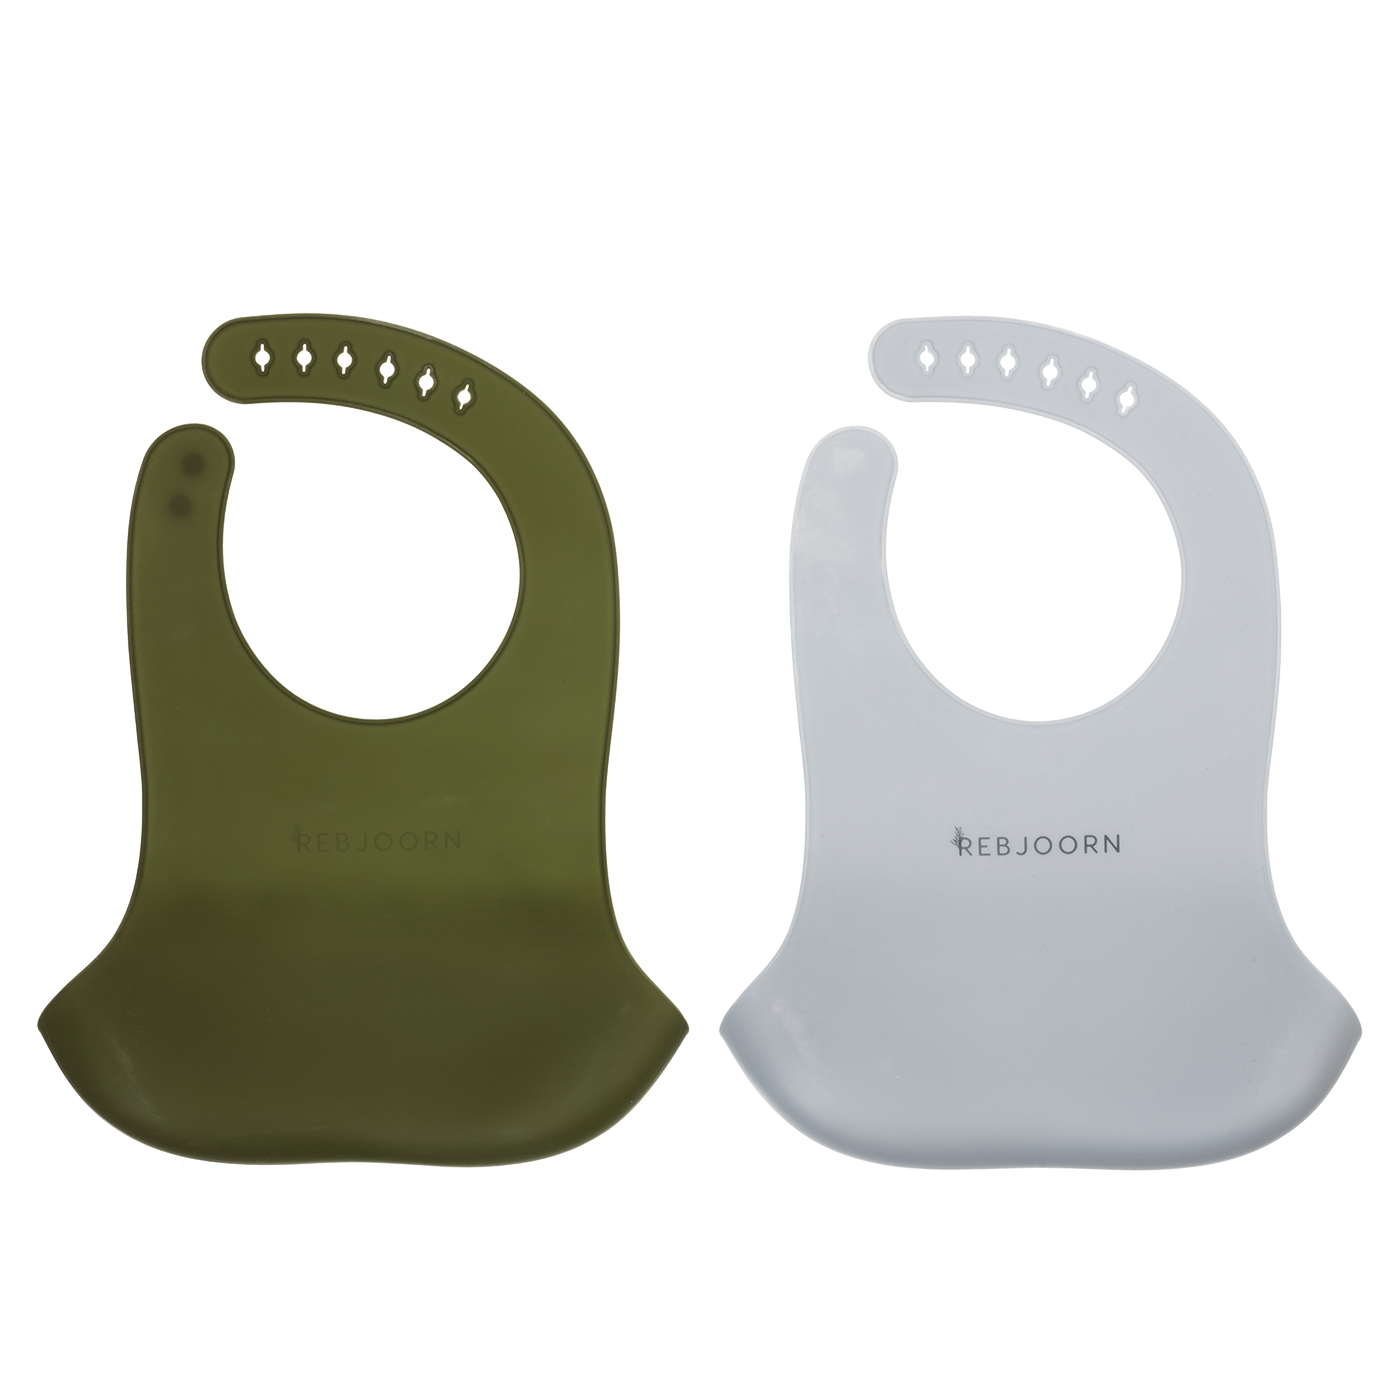 Rebjoorn - Silikonbäcken grönt och grått 2-pack